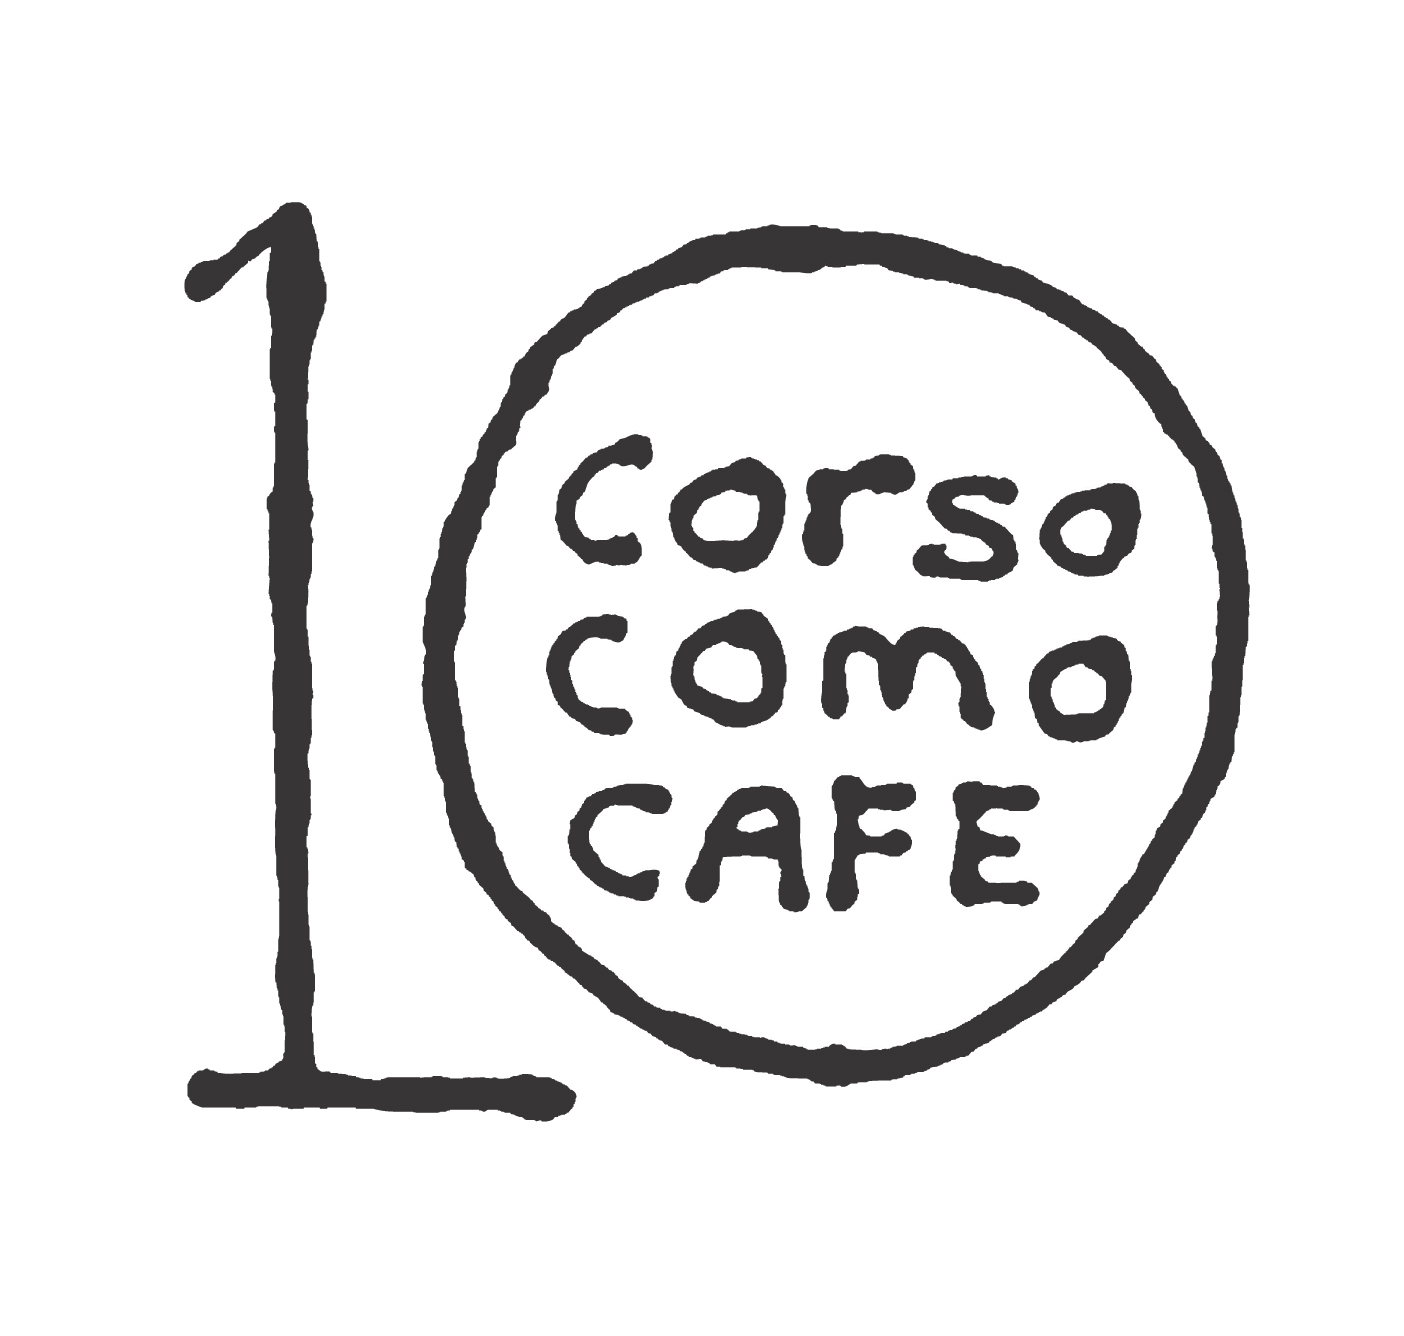 10 CORSO COMO CAFE (Samsung C&T Corp.)